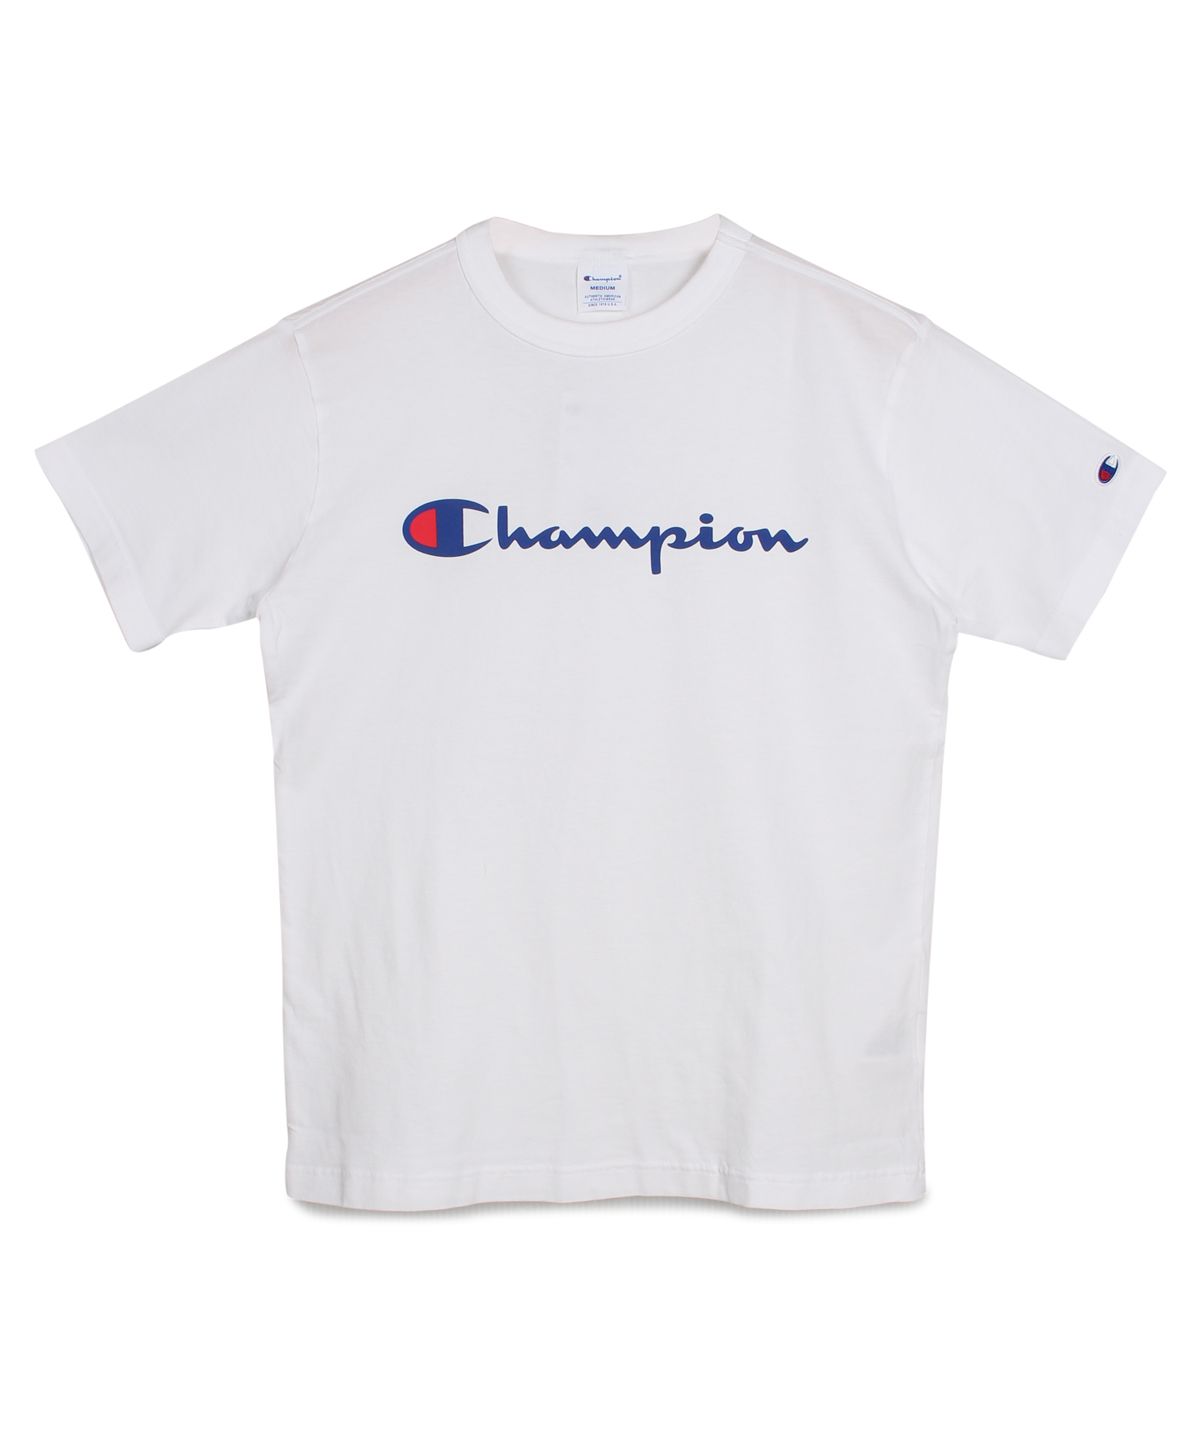 【セール】チャンピオン Champion Tシャツ 半袖 メンズ レディース